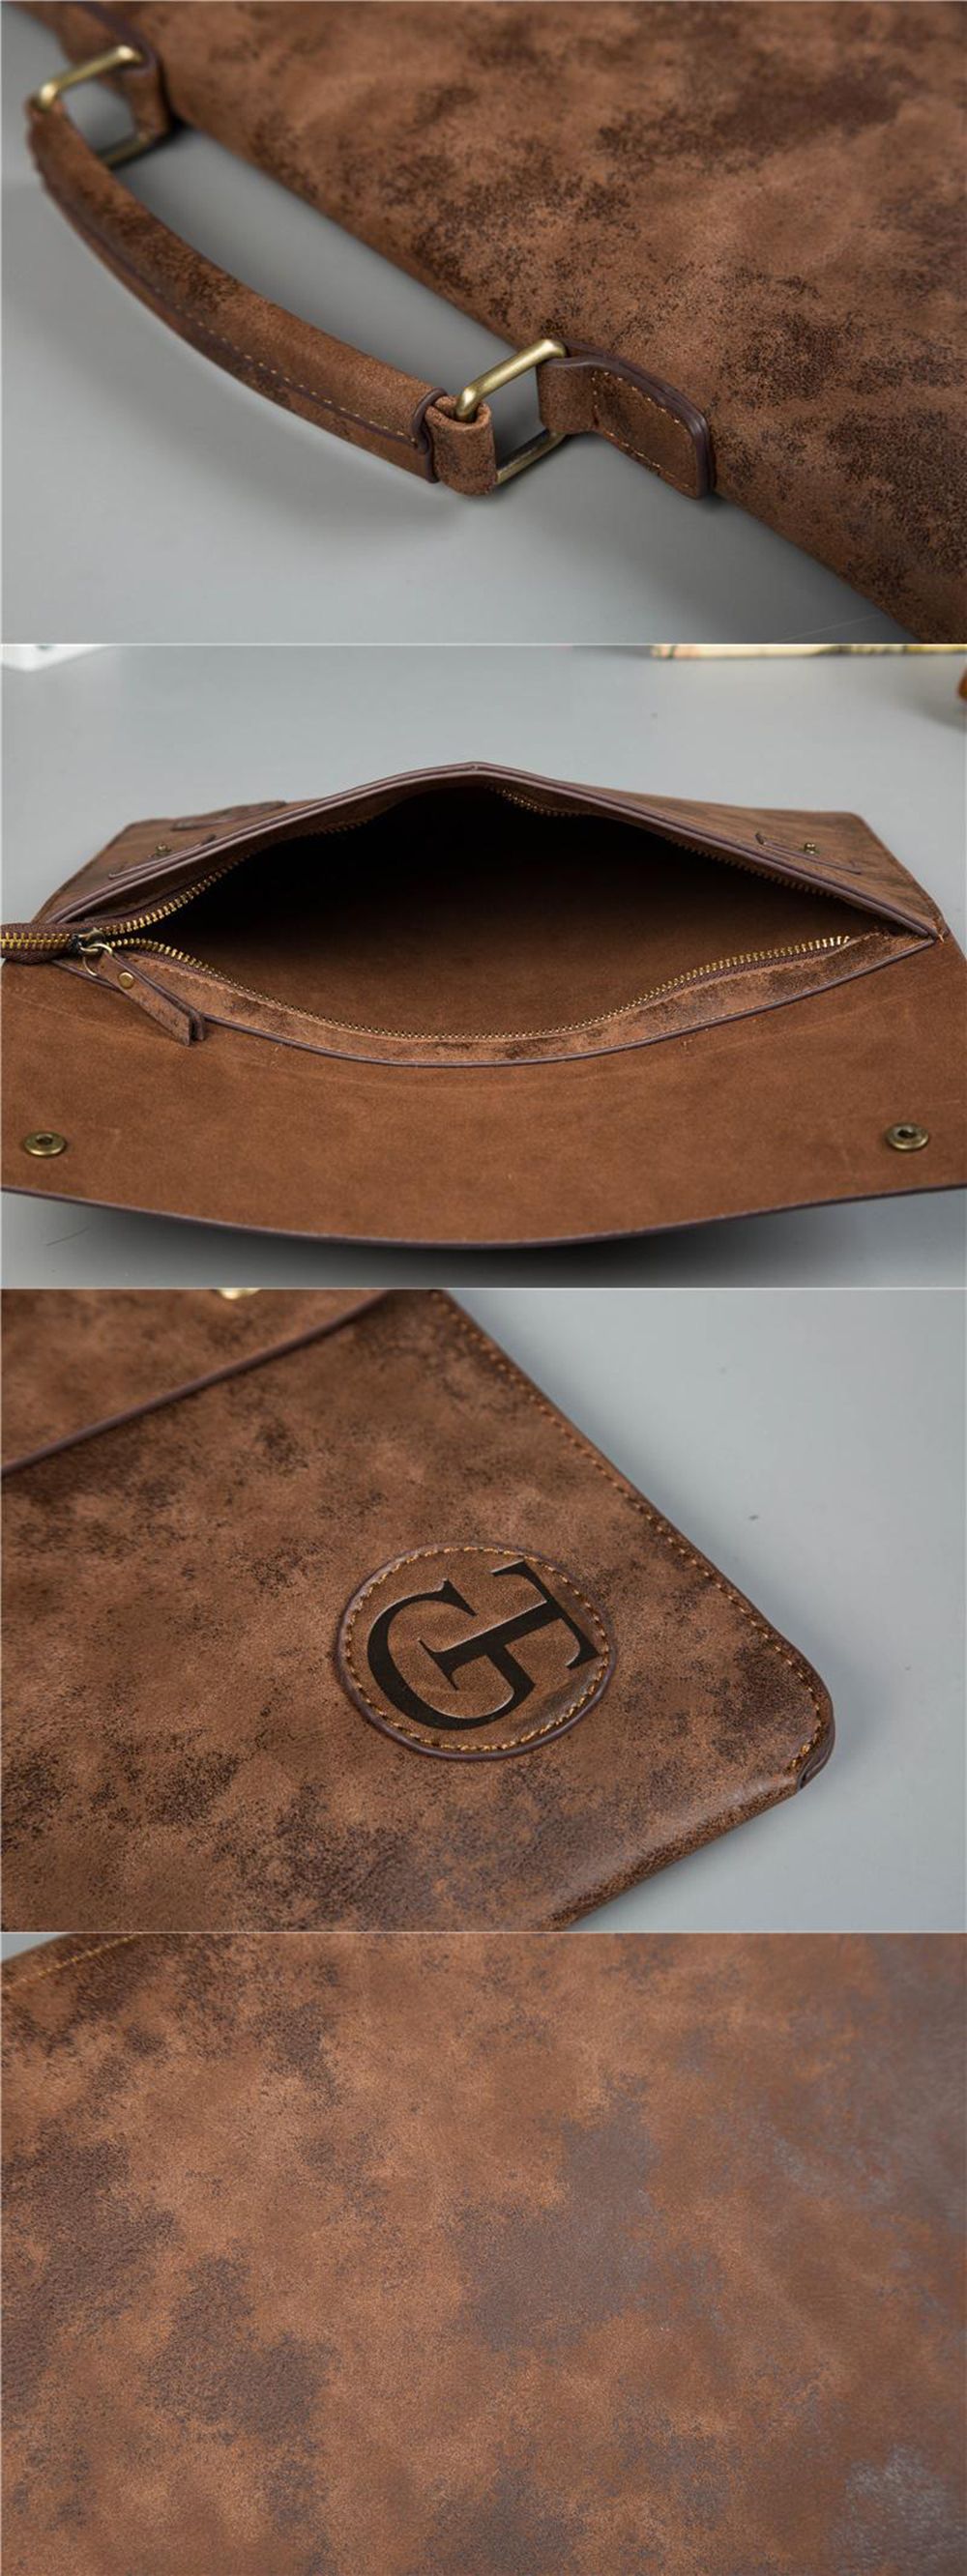 PU-Leather-Business-Briefcase-Laptop-Bag-Retro-Handbag-Mens-Ultrathin-File-Bag-Shoulder-Bag-Crossbod-1619107